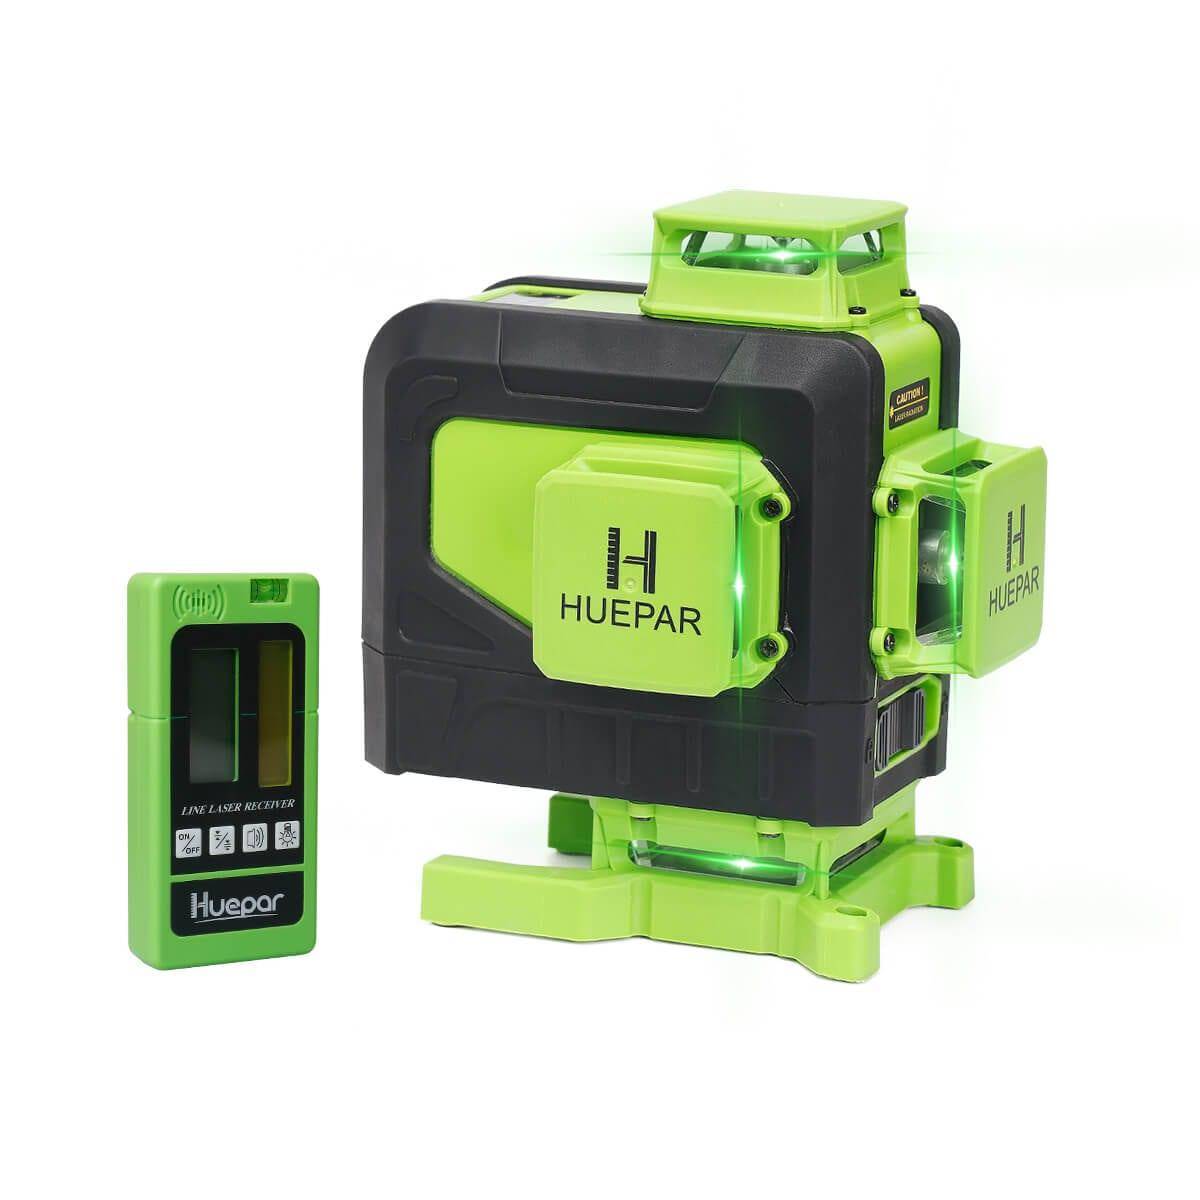 Huepar 904DG - 4x360° Green Cross Line Floor Laser Tool with Remote Control & magnetic Bracket - HUEPAR UK